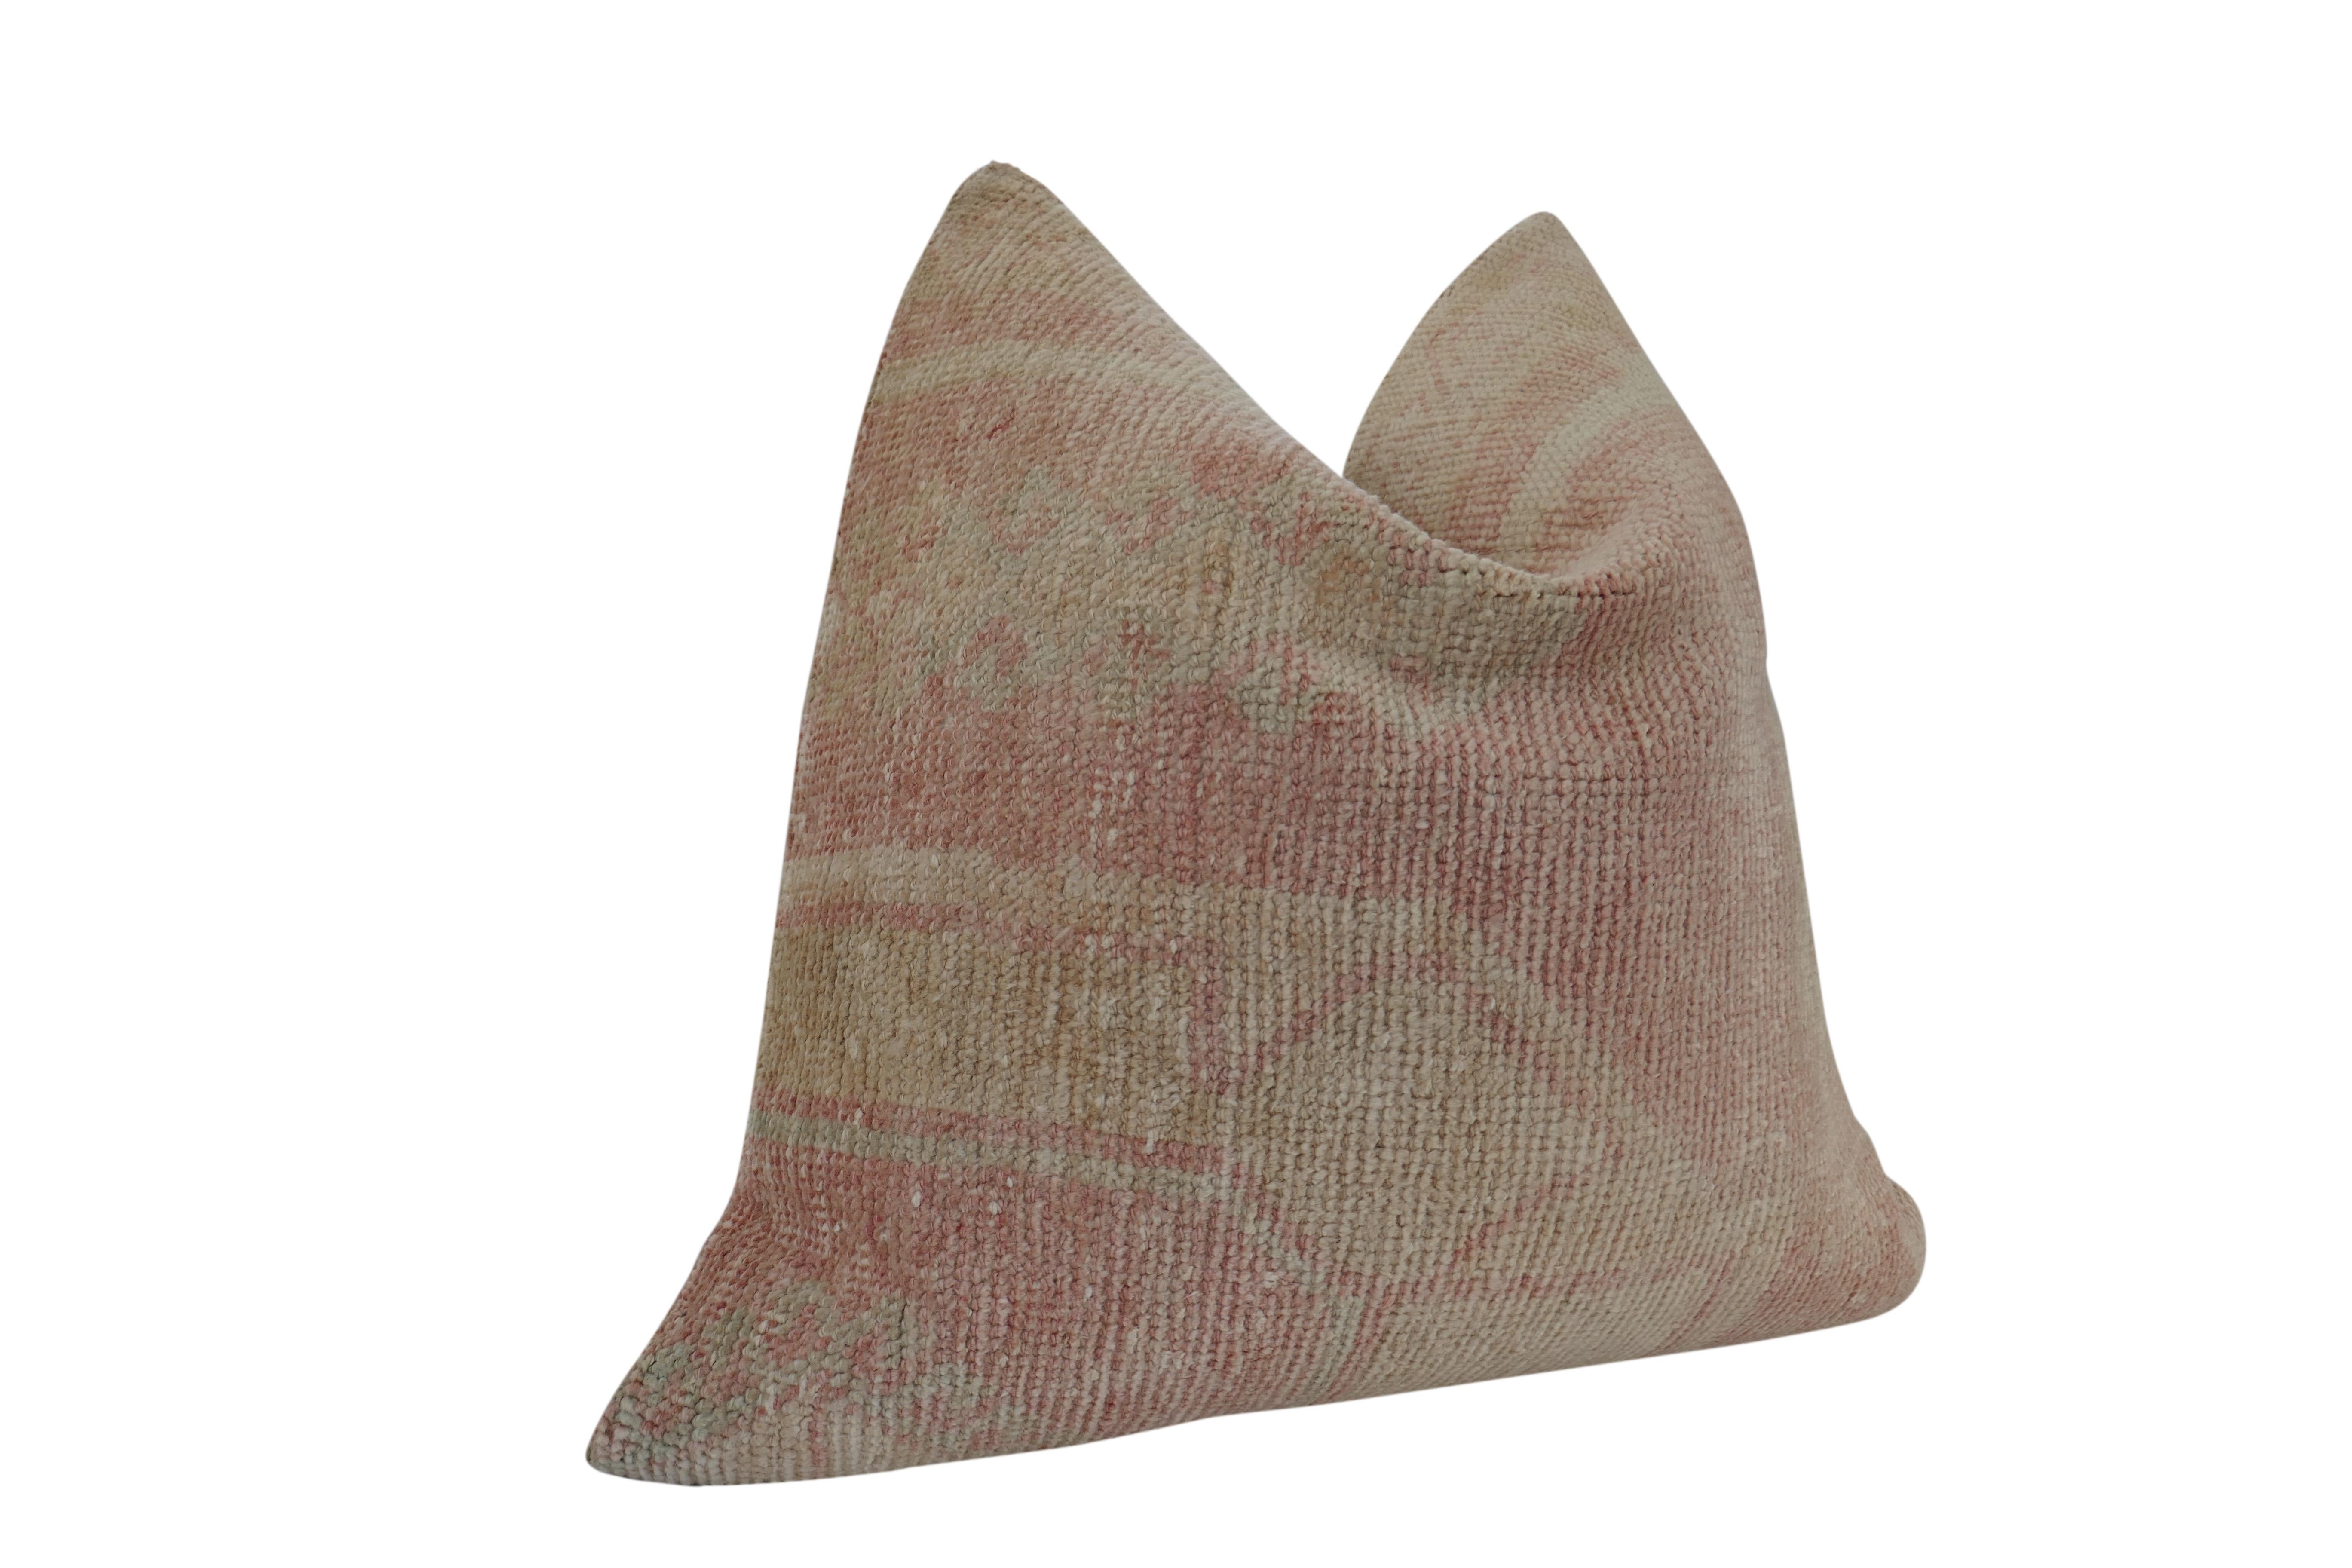 Unsere Herbst Collection'S mit ausgewählten authentischen Vintage-Textilien. Makellos aus Berber-Kilim-Wolle gefertigt, mit einzigartigen, natürlich gealterten, wunderschön gedämpften Blush- und Sandtönen. Gepaart mit unserer hochwertigen Rückseite